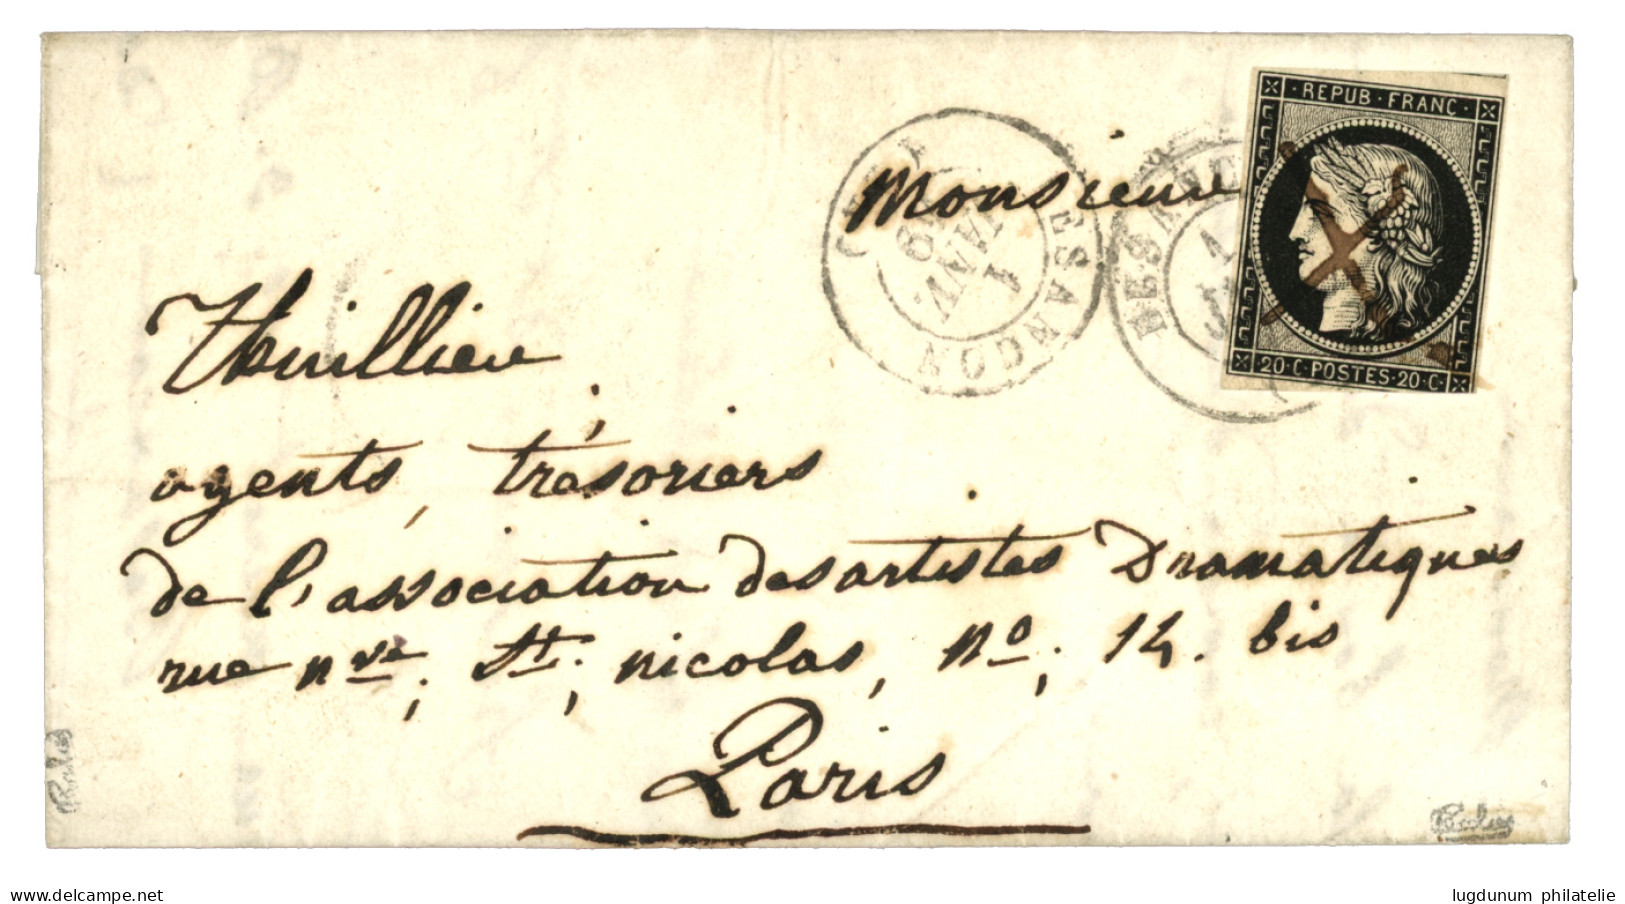 1 JANVIER 1849 : 20c Noir (n°3) Touché En Bas Obl. Plume + Cachet Type 15 BESANCON 1 JANV. 49 Sur Lettre Avec Texte Pour - 1849-1850 Ceres